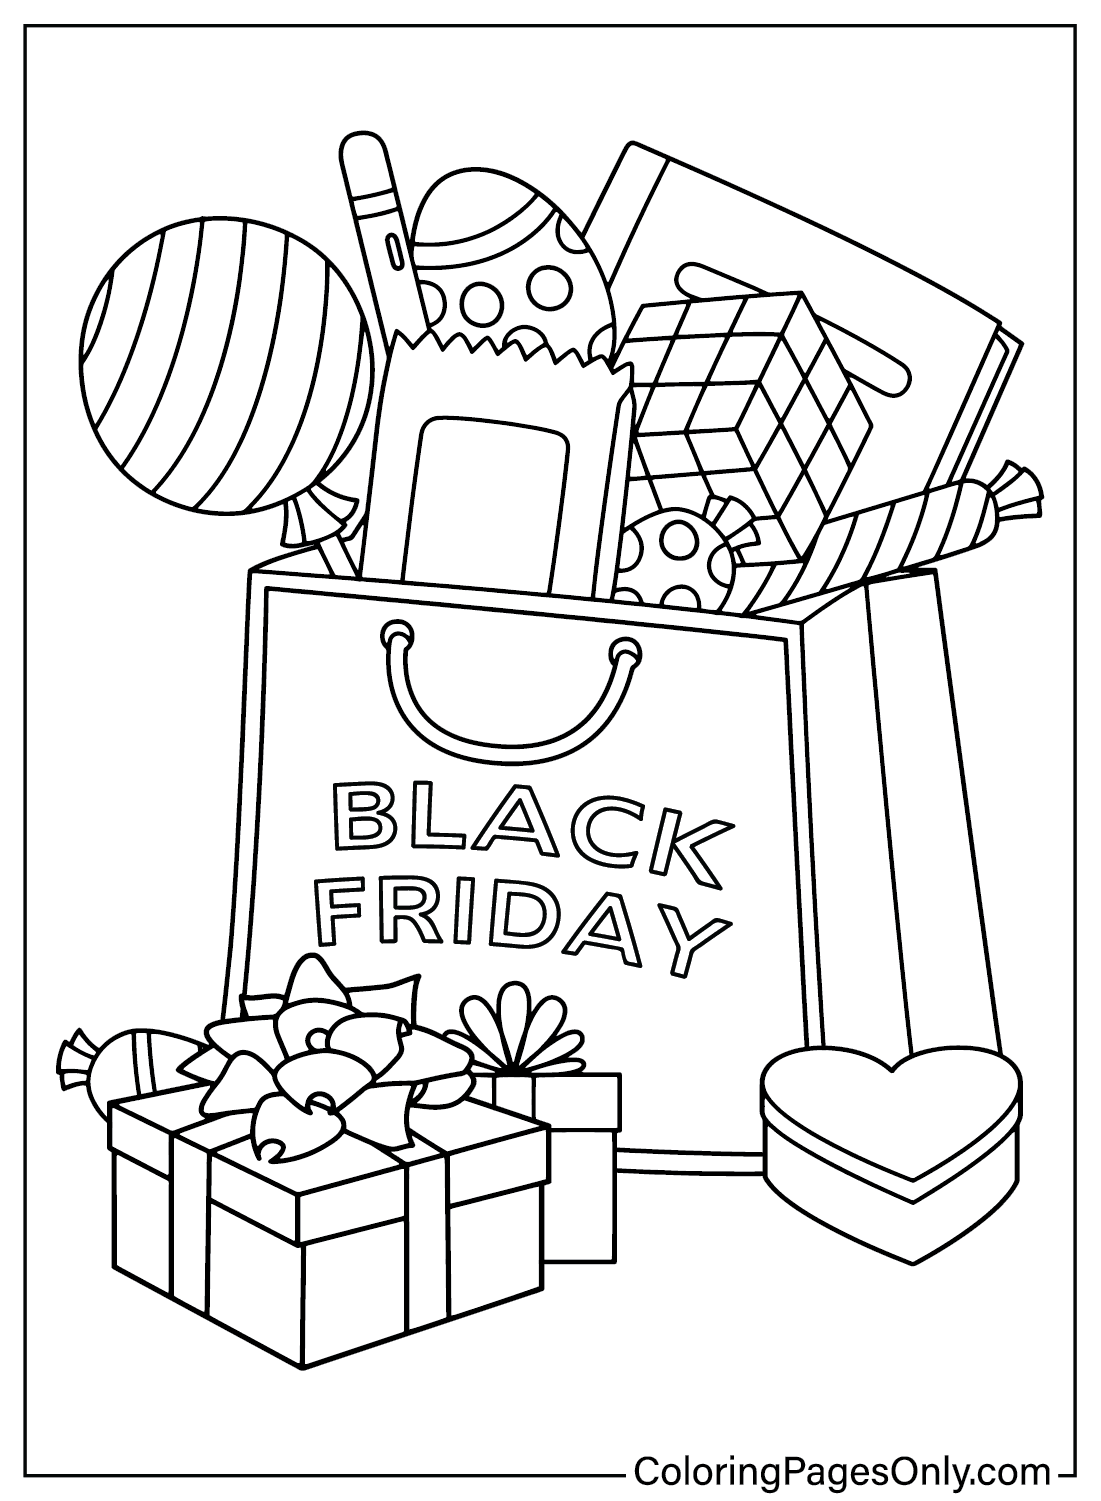 Black Friday-Malvorlagendruck vom Black Friday